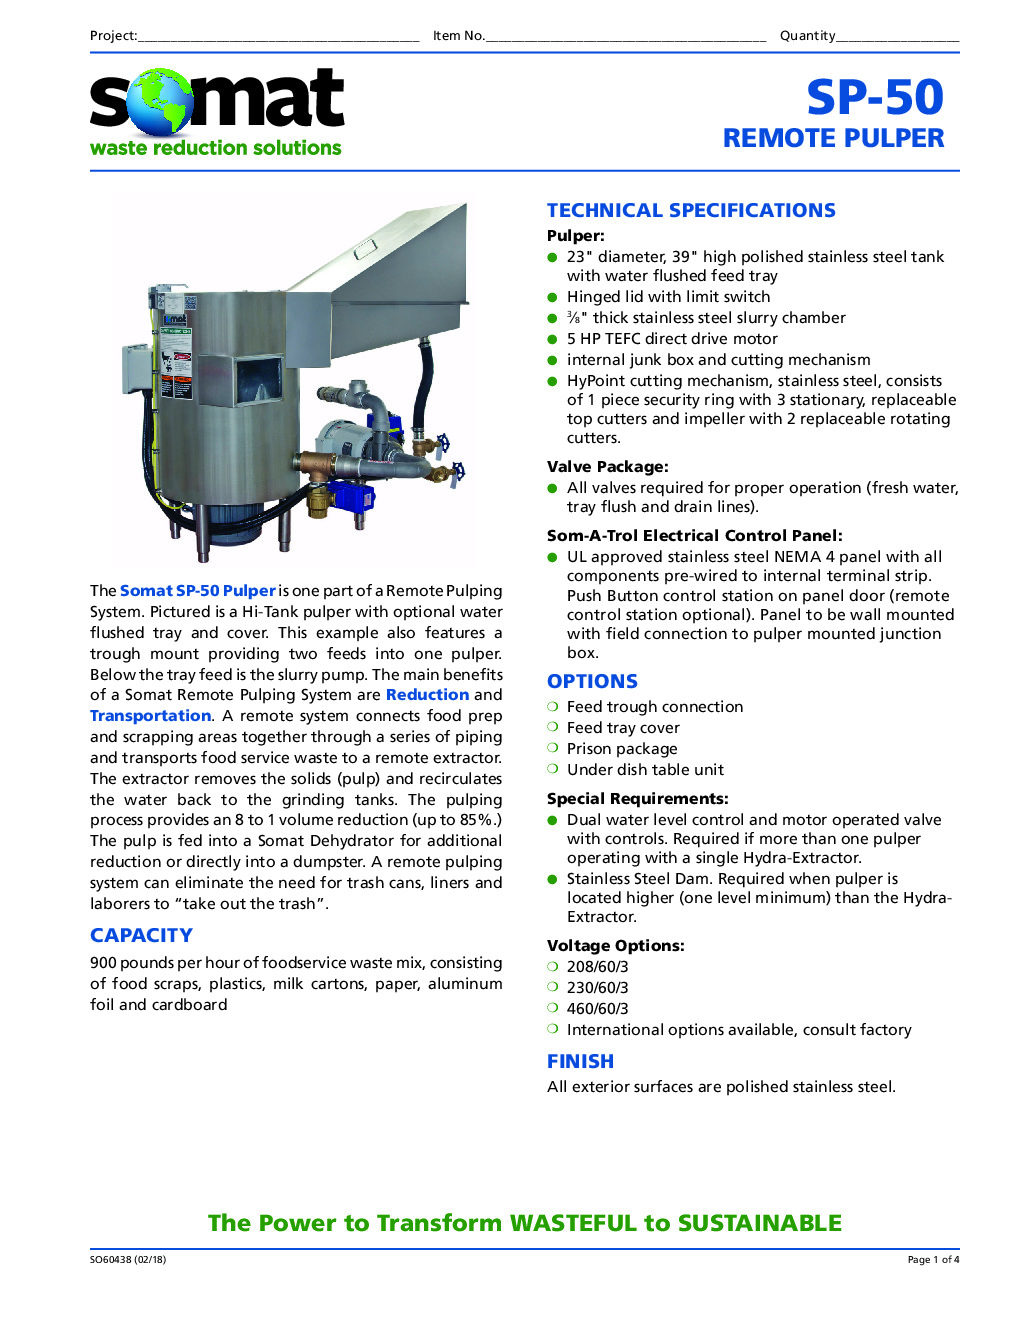 Somat SP50+BUILDUP Pulper Waste System